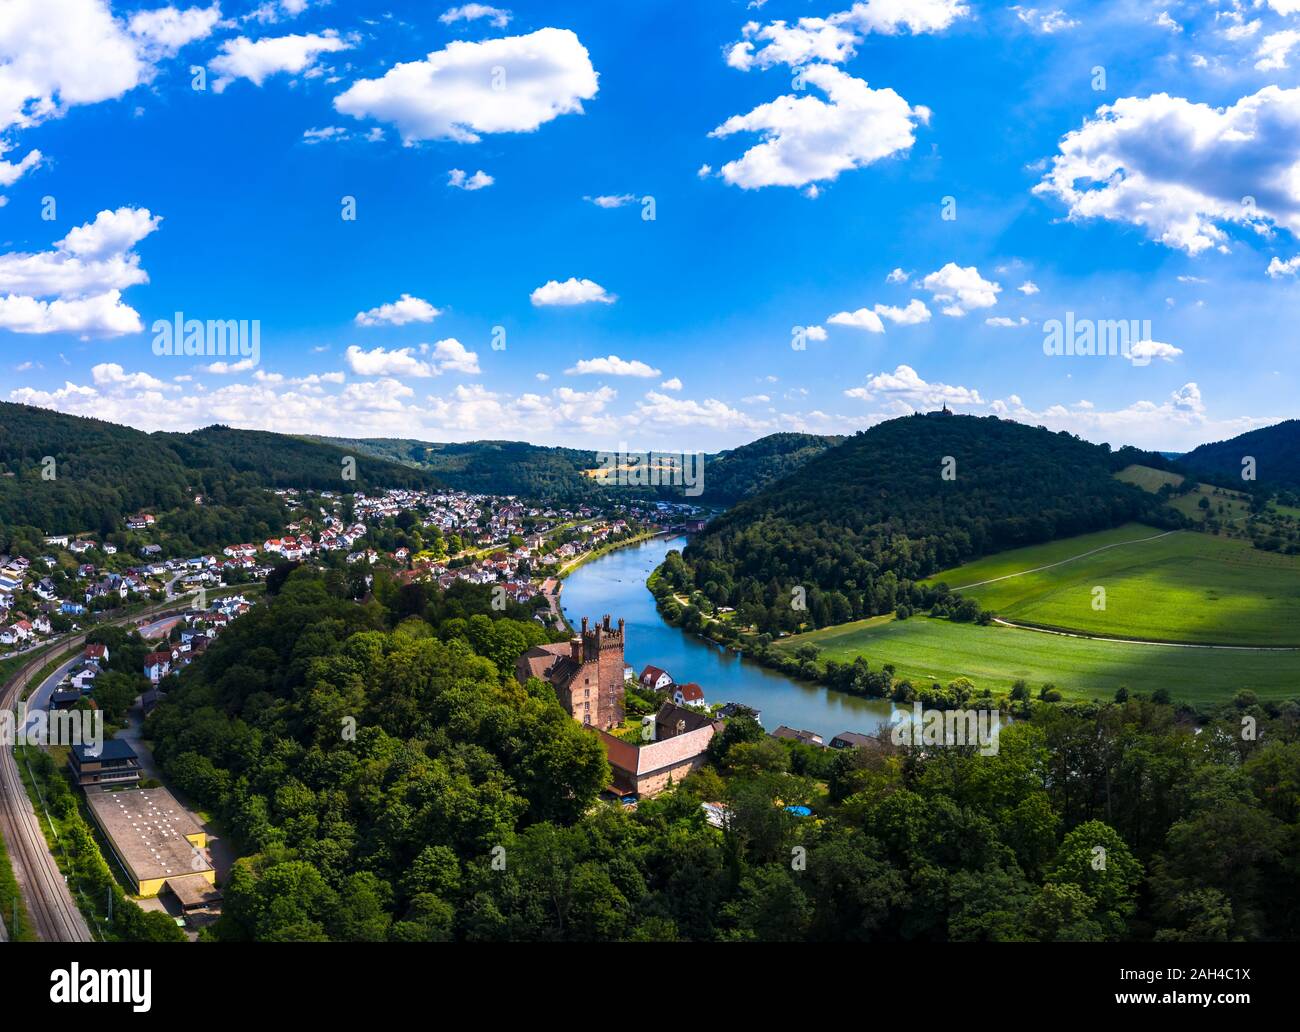 Germany, Baden-Wurttemberg, Neckarsteinach, Aerial view of town and castles Schadeck, Vorderburg, Mittelburg, Hinterburg Stock Photo